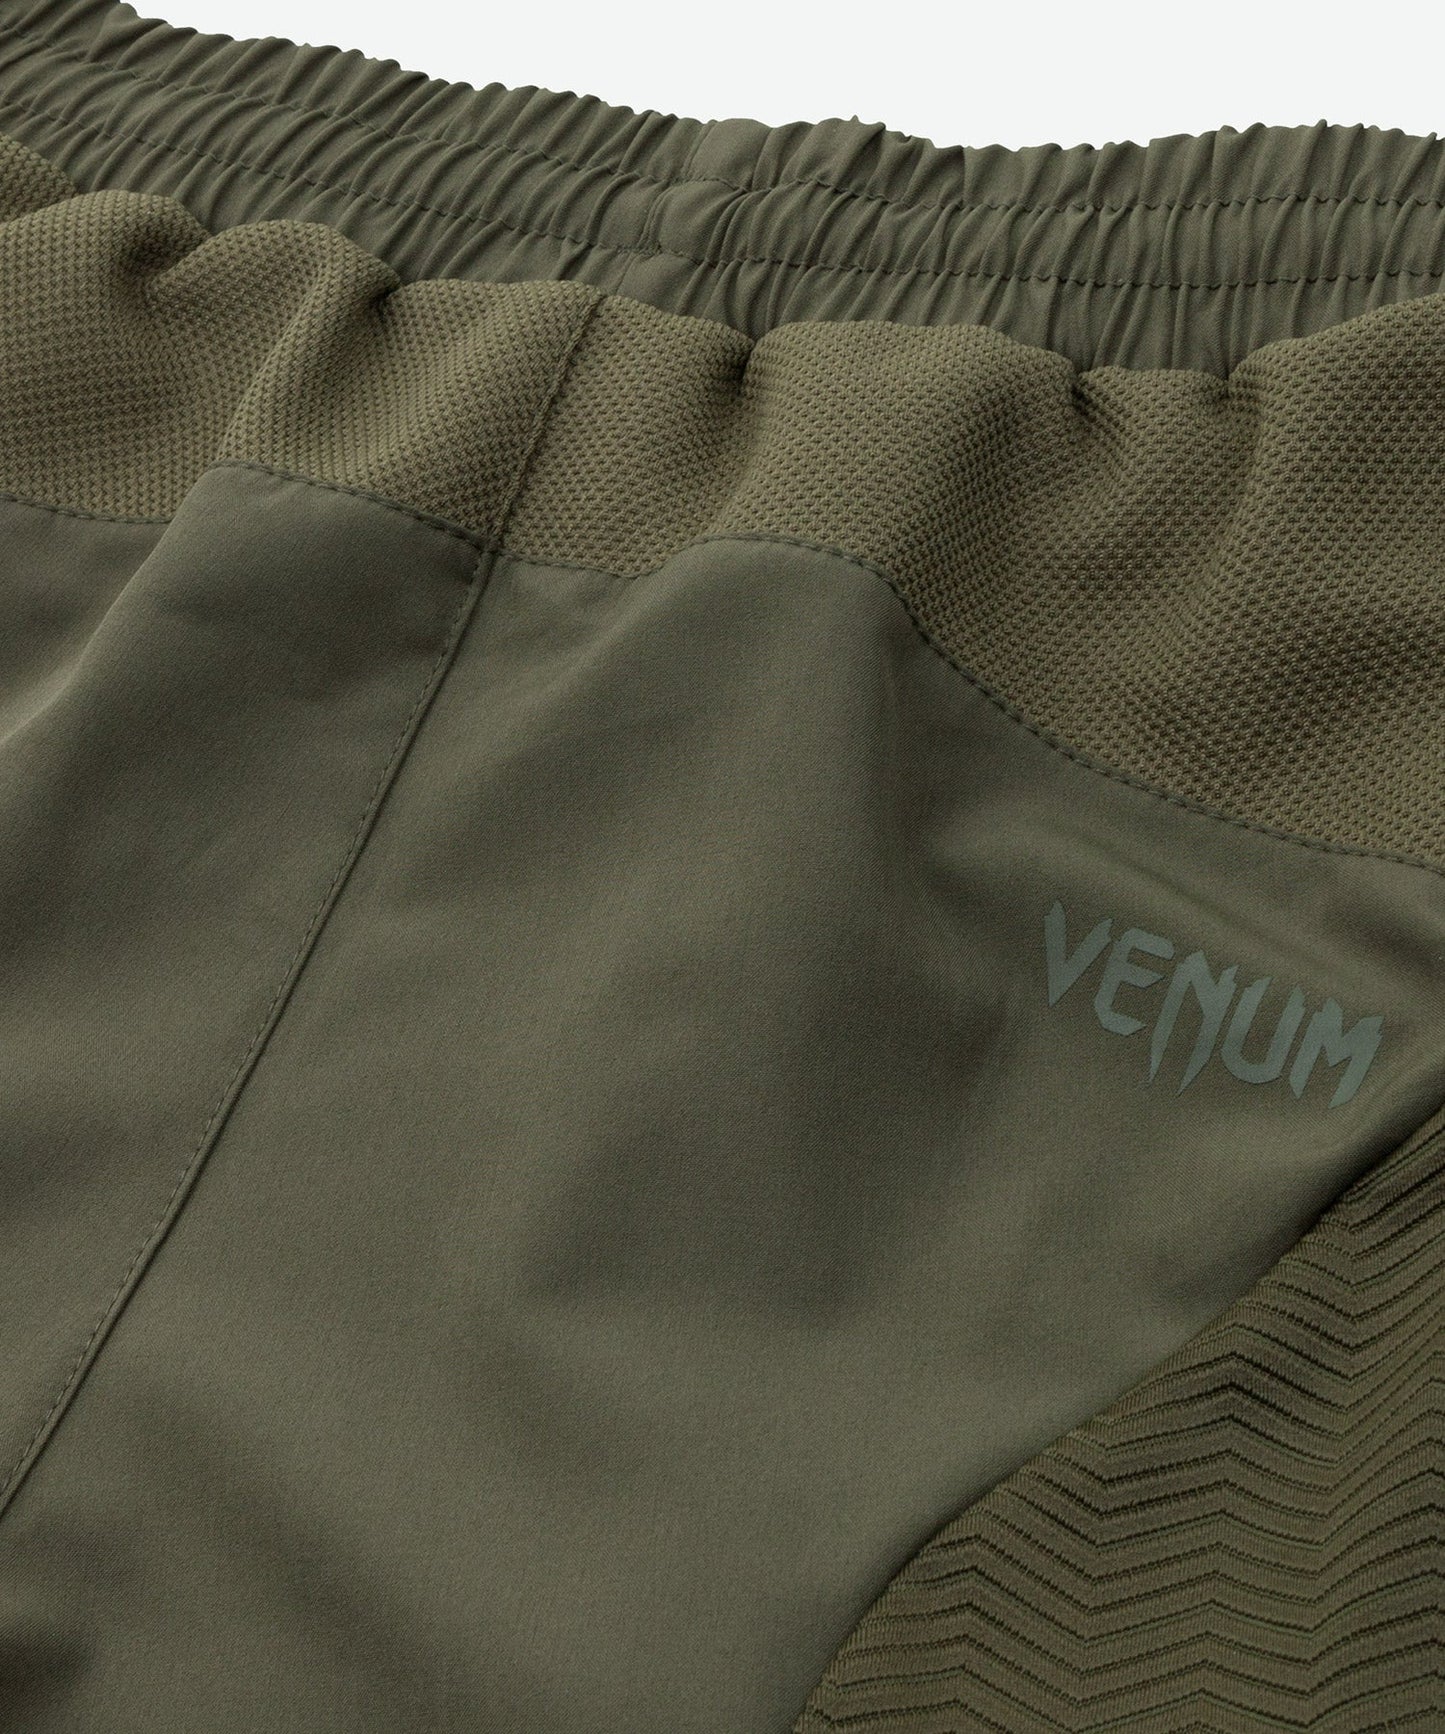 Venum G-Fit Training Shorts - Khaki